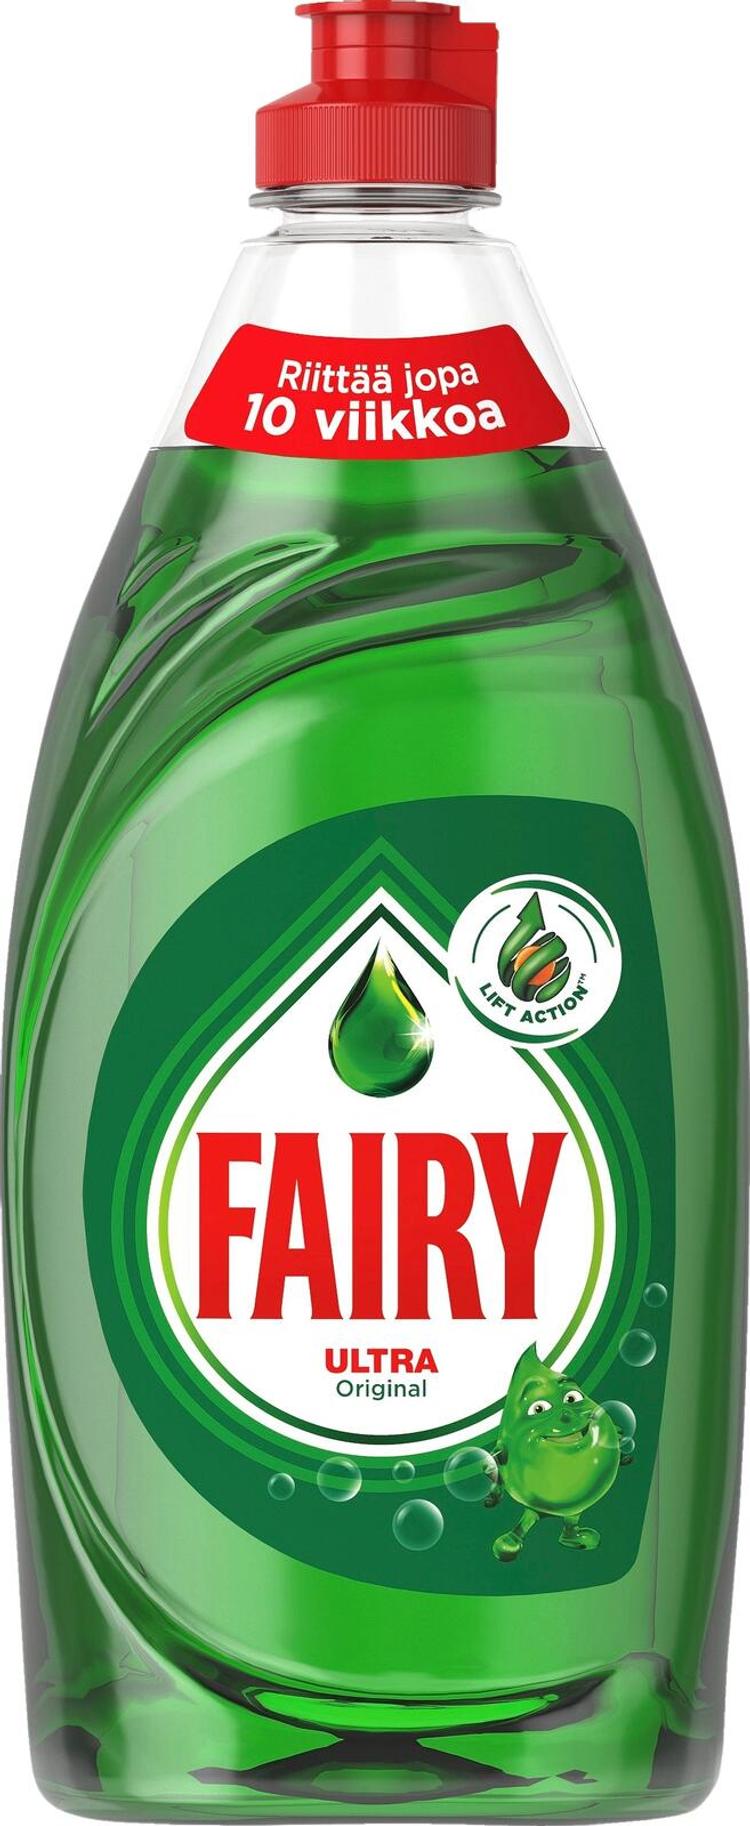 Fairy 500ml Original astianpesuaine